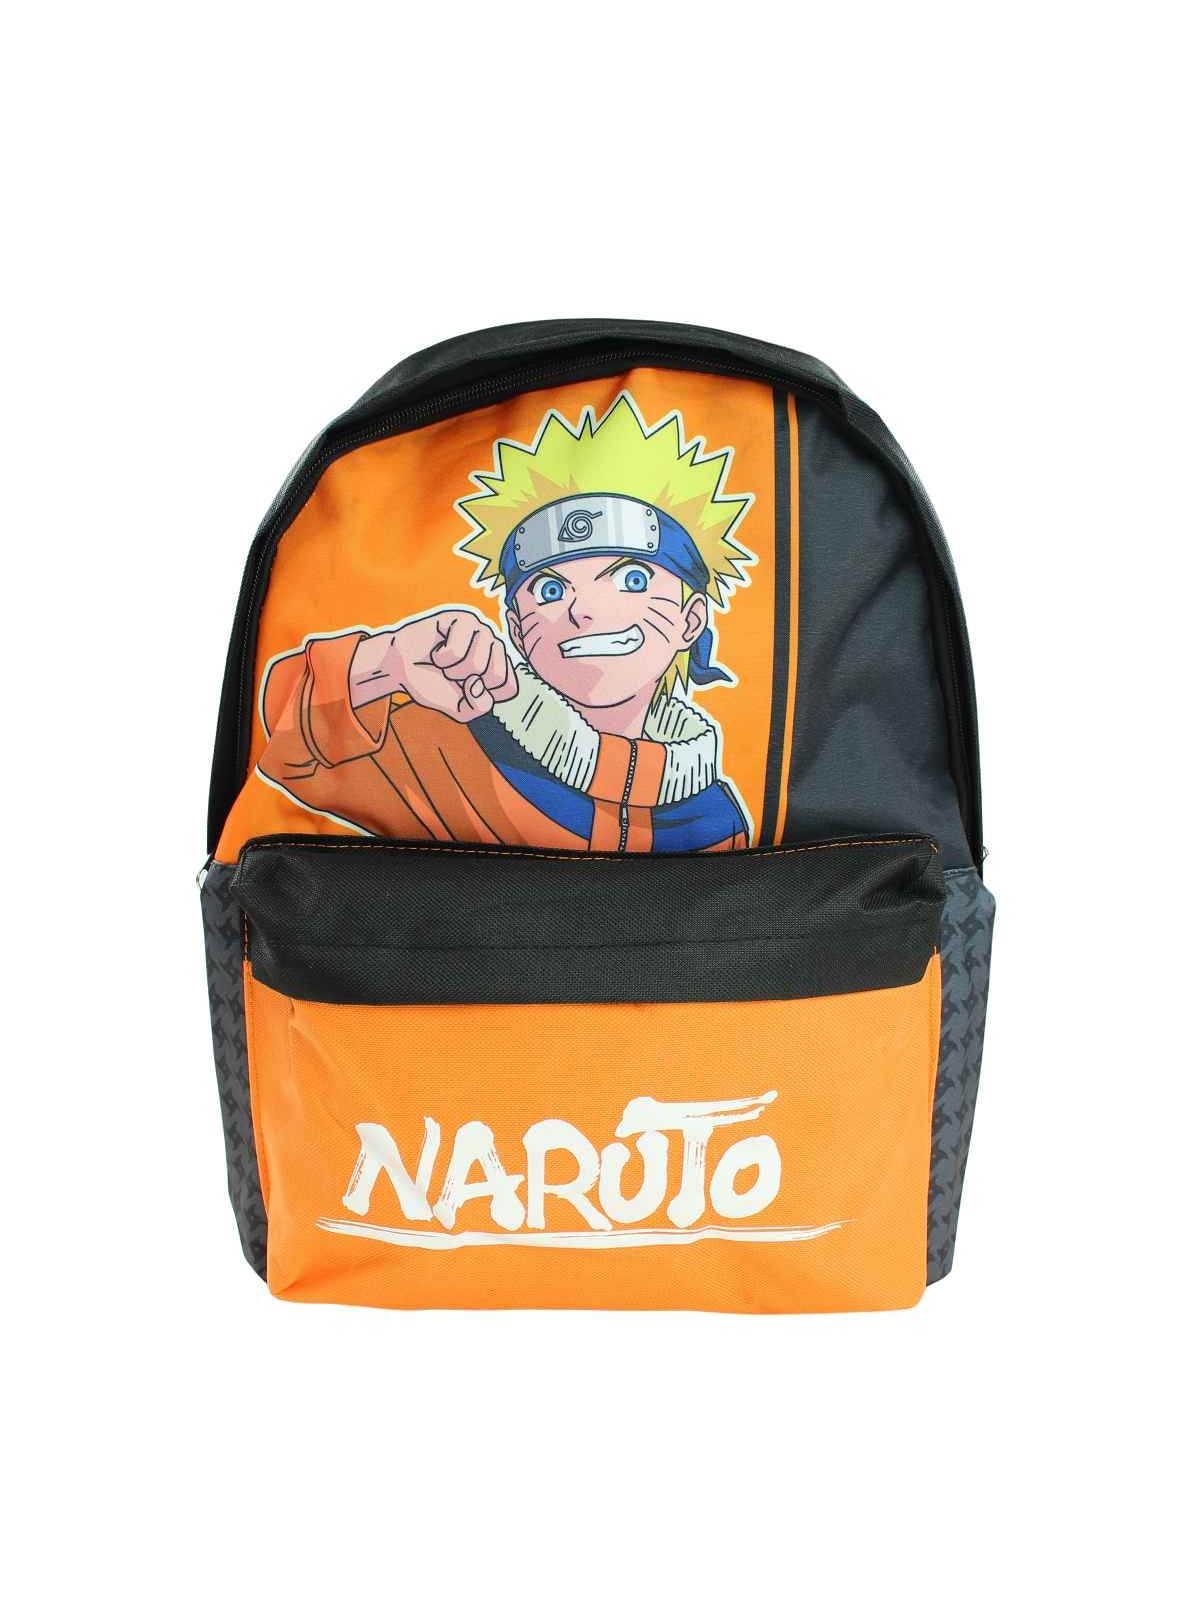 Naruto Rucksack 30x26x10